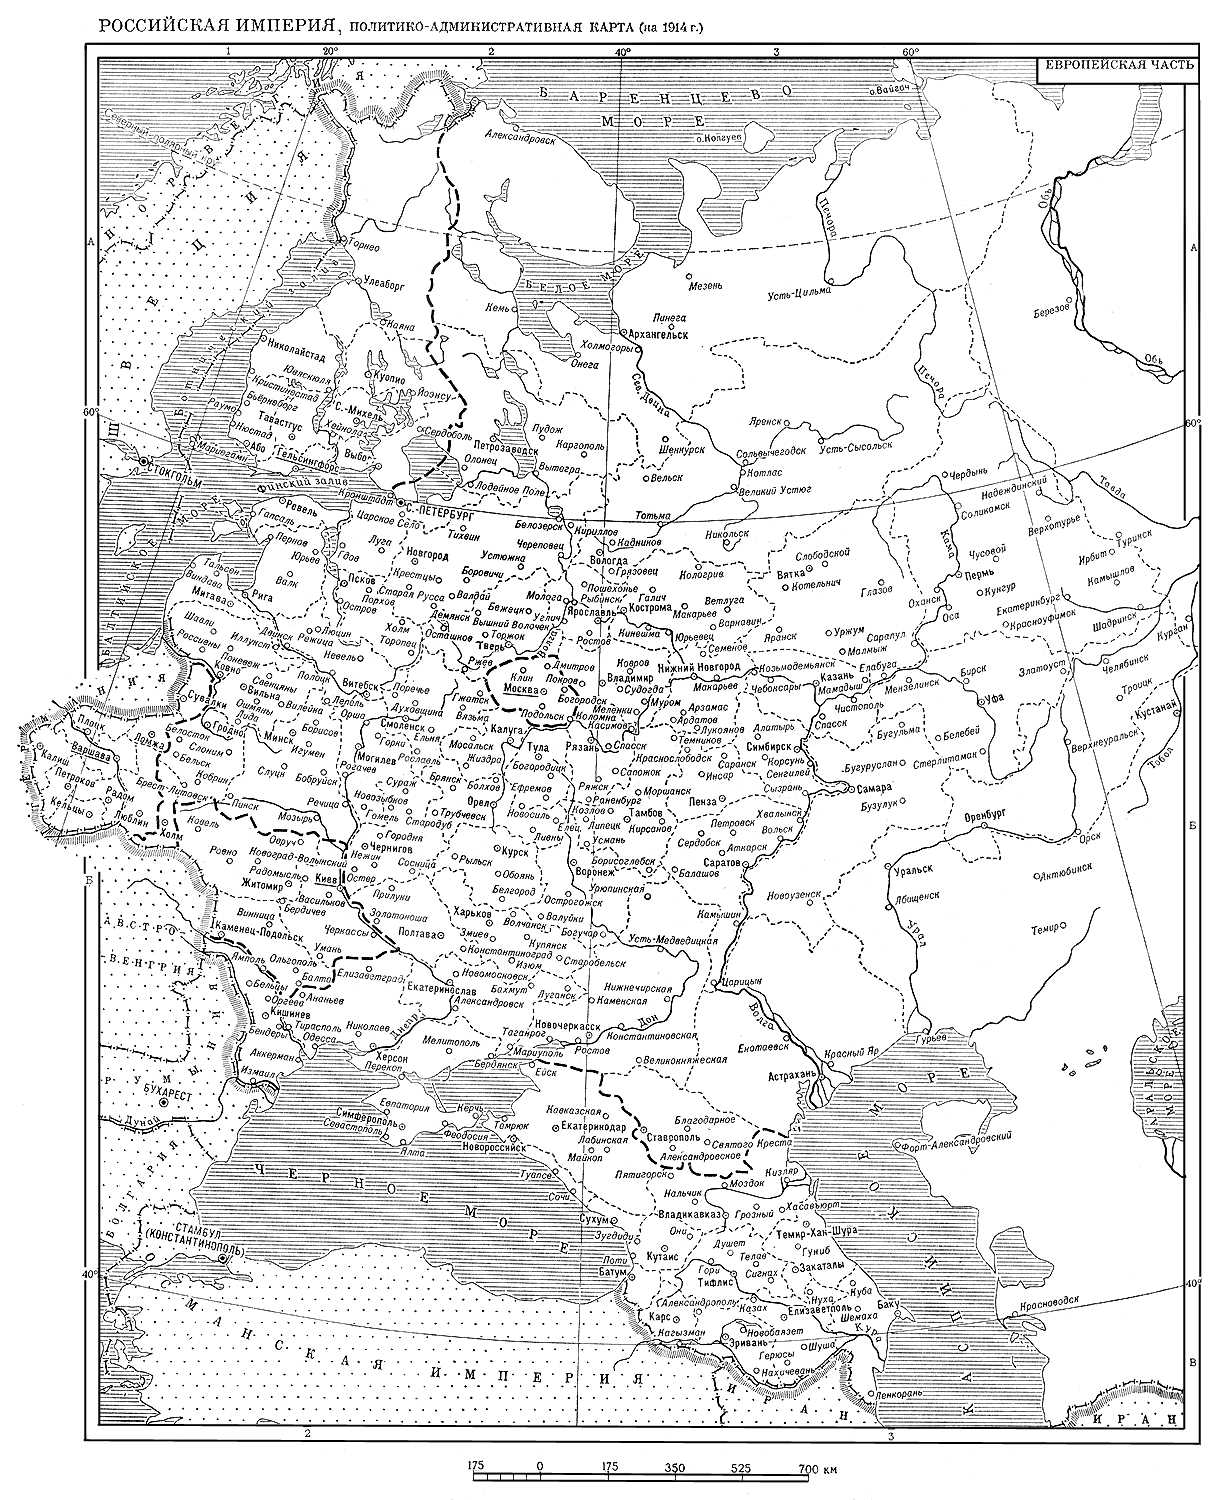 Политико-административная карта Европейской части Российской империи (на 1914 г.)